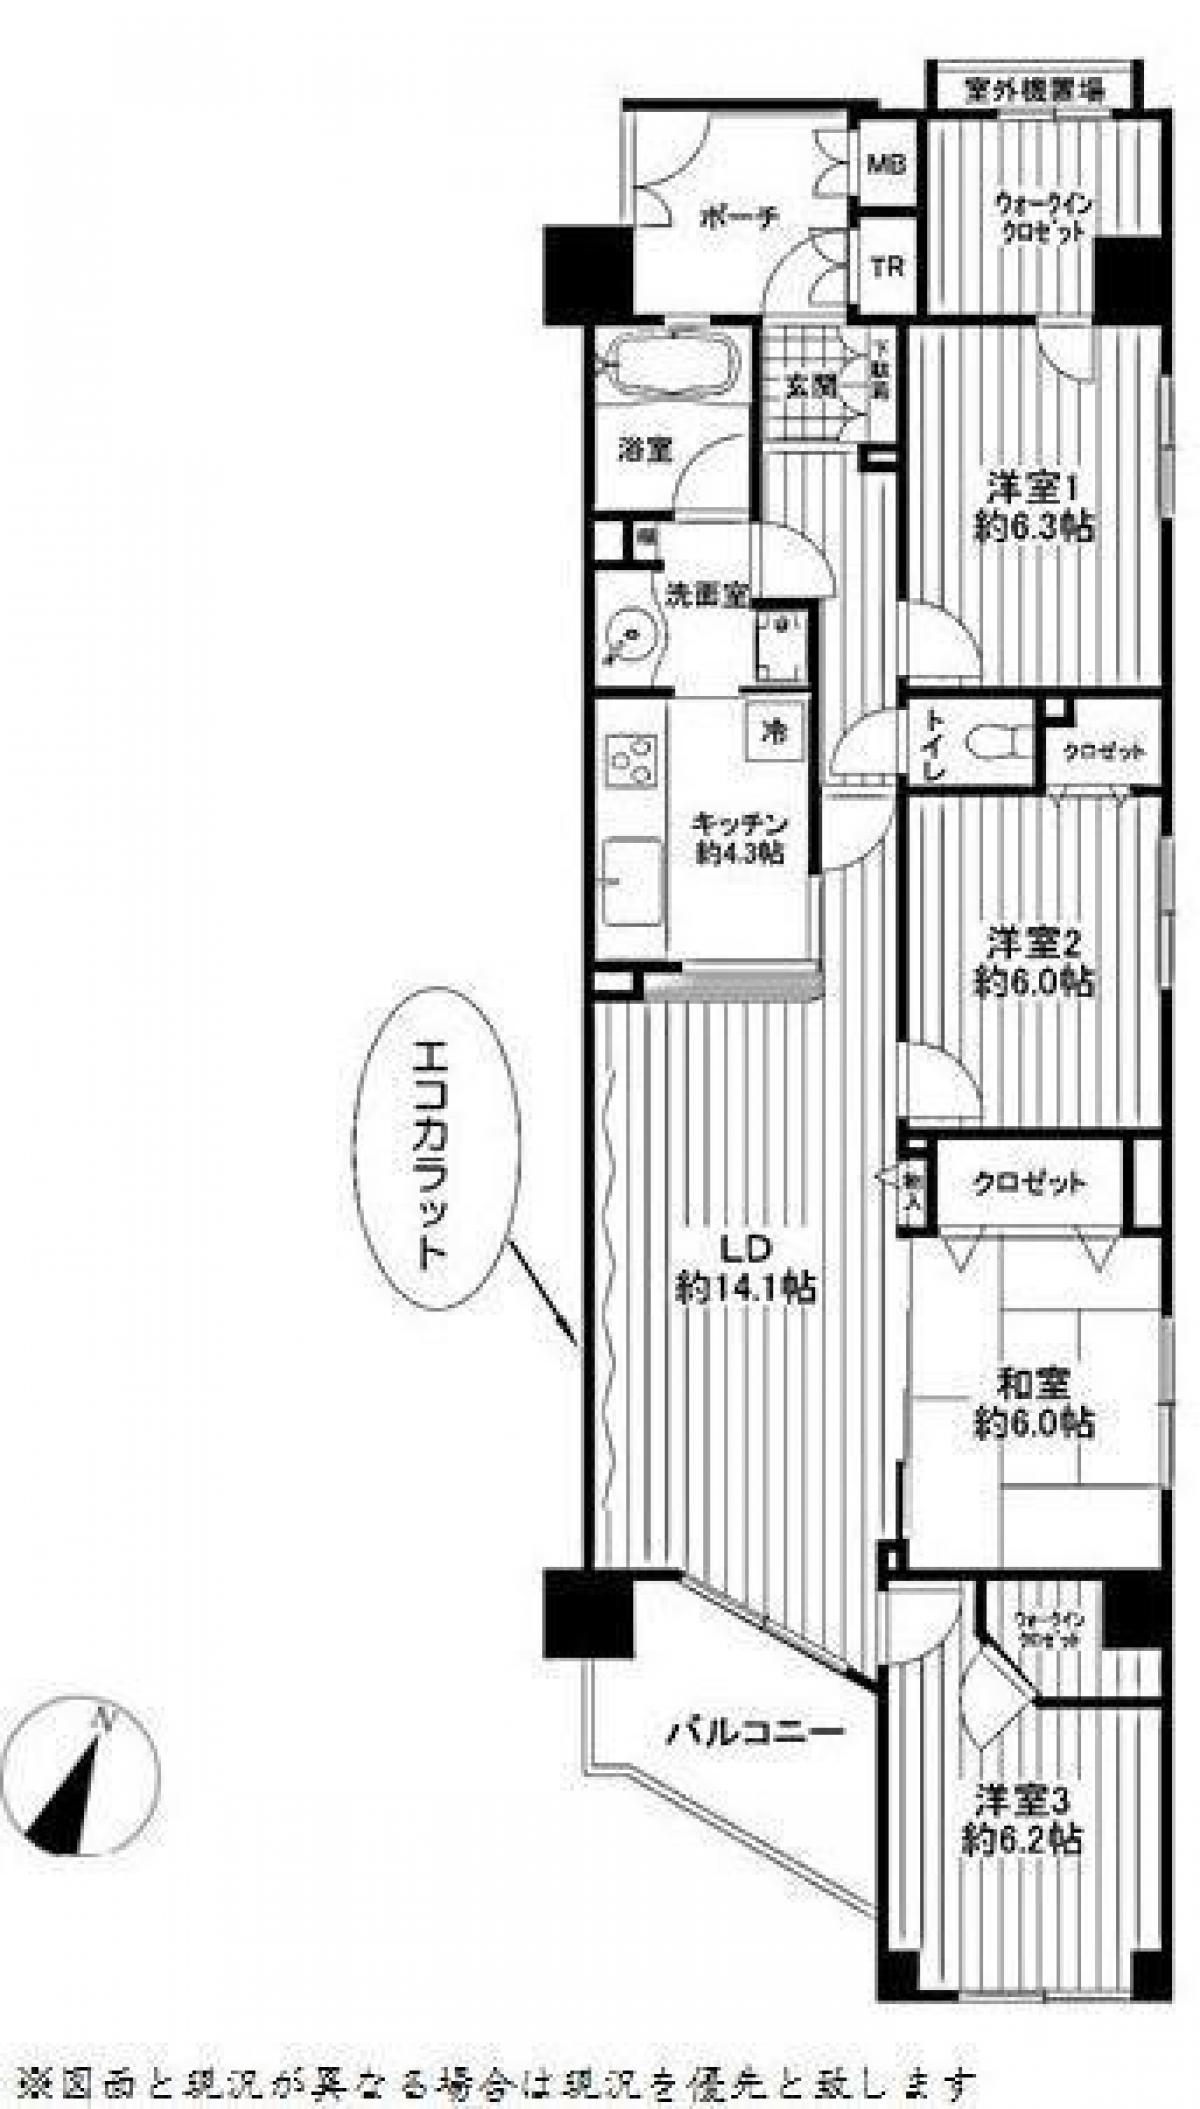 Picture of Apartment For Sale in Kawasaki Shi Kawasaki Ku, Kanagawa, Japan